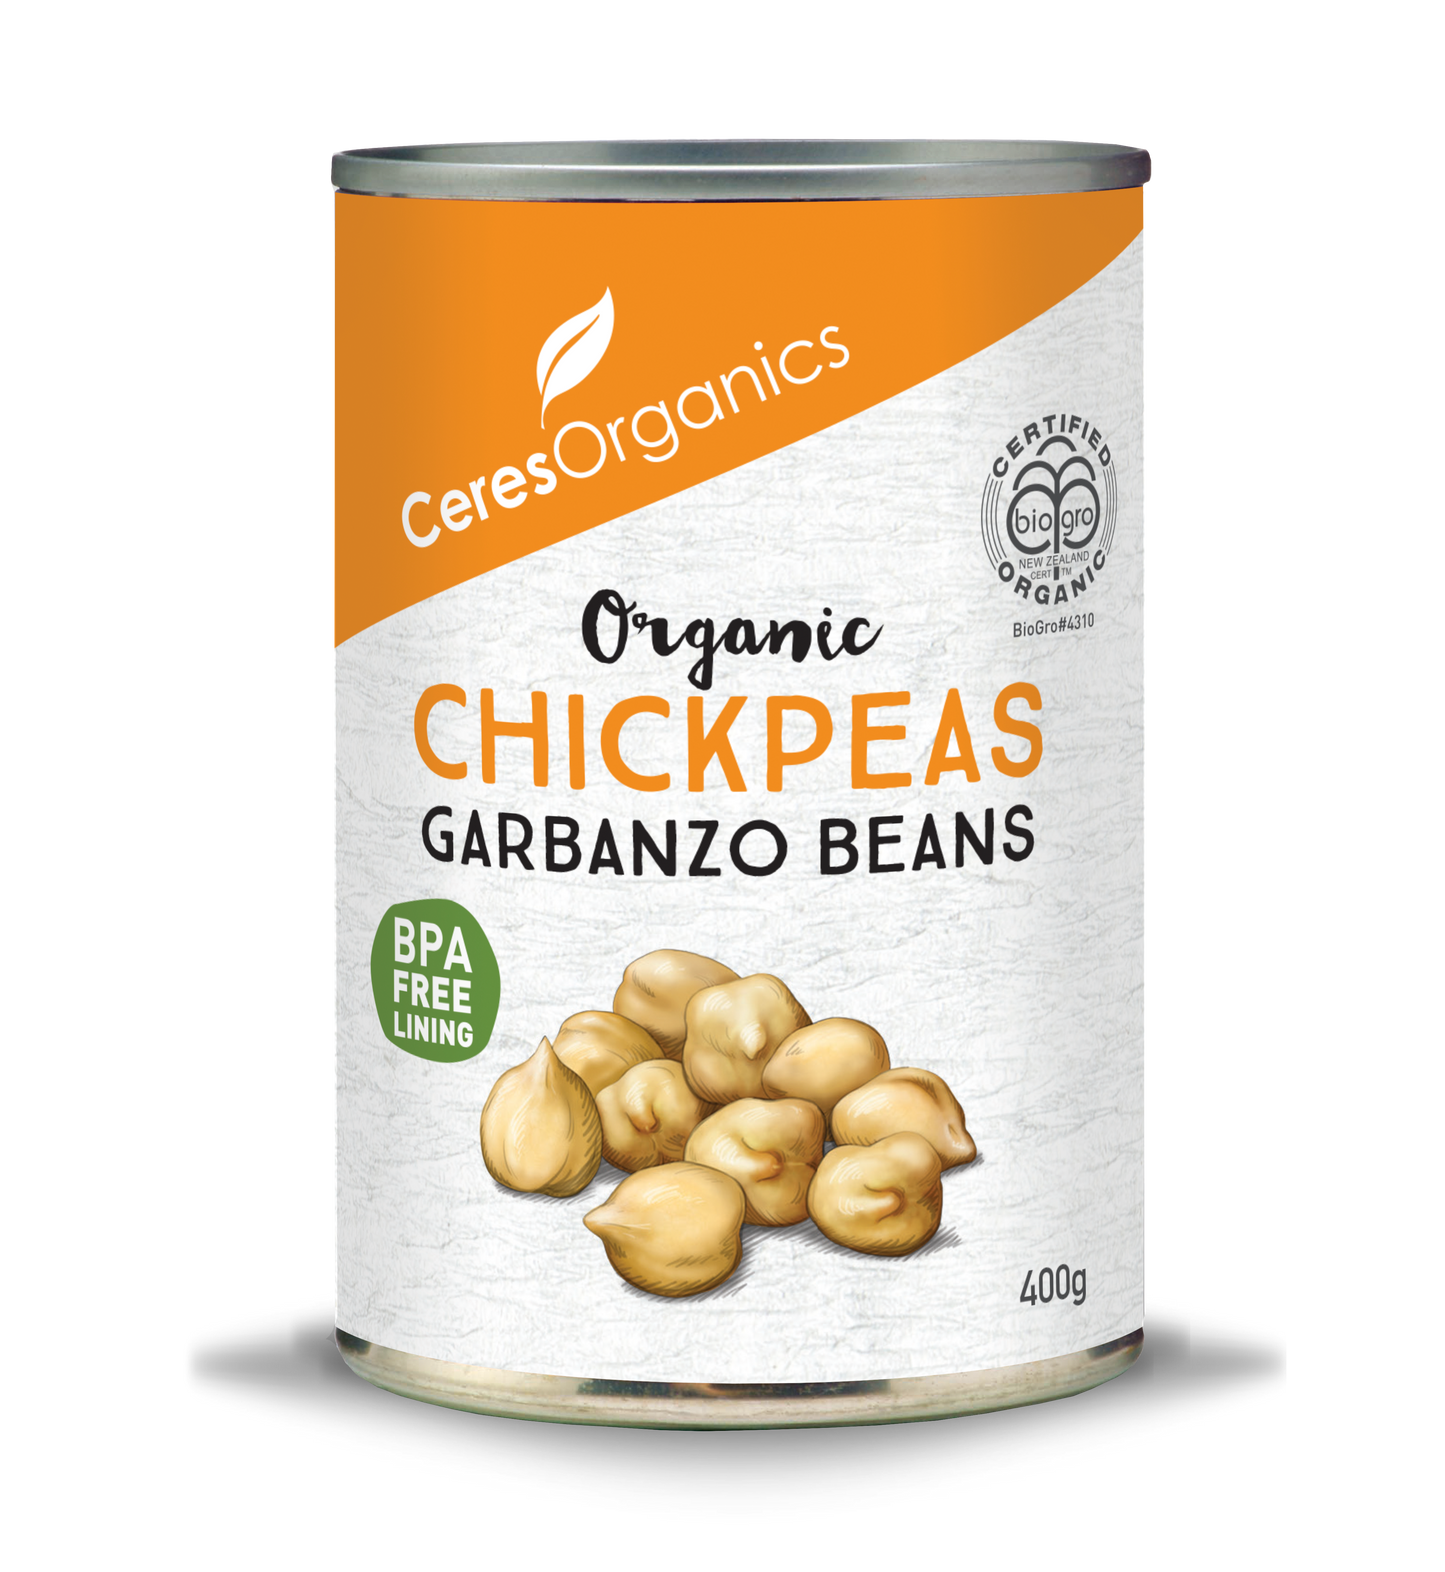 Organic Chickpeas / Garbanzo Beans - 400g